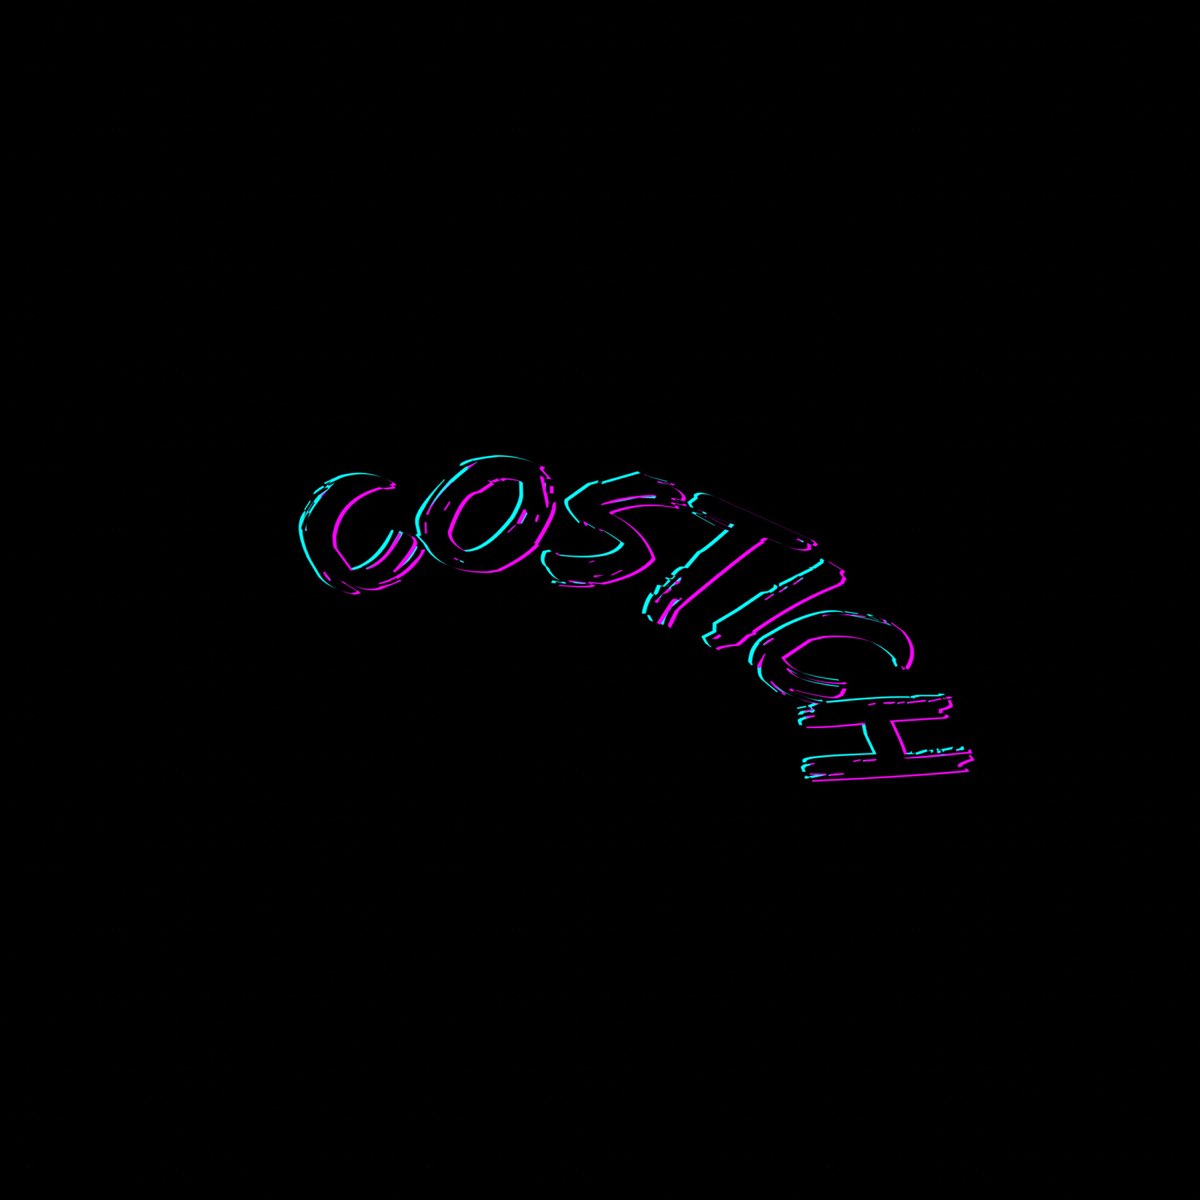 Costich - Single de PROGRESIVO en Apple Music